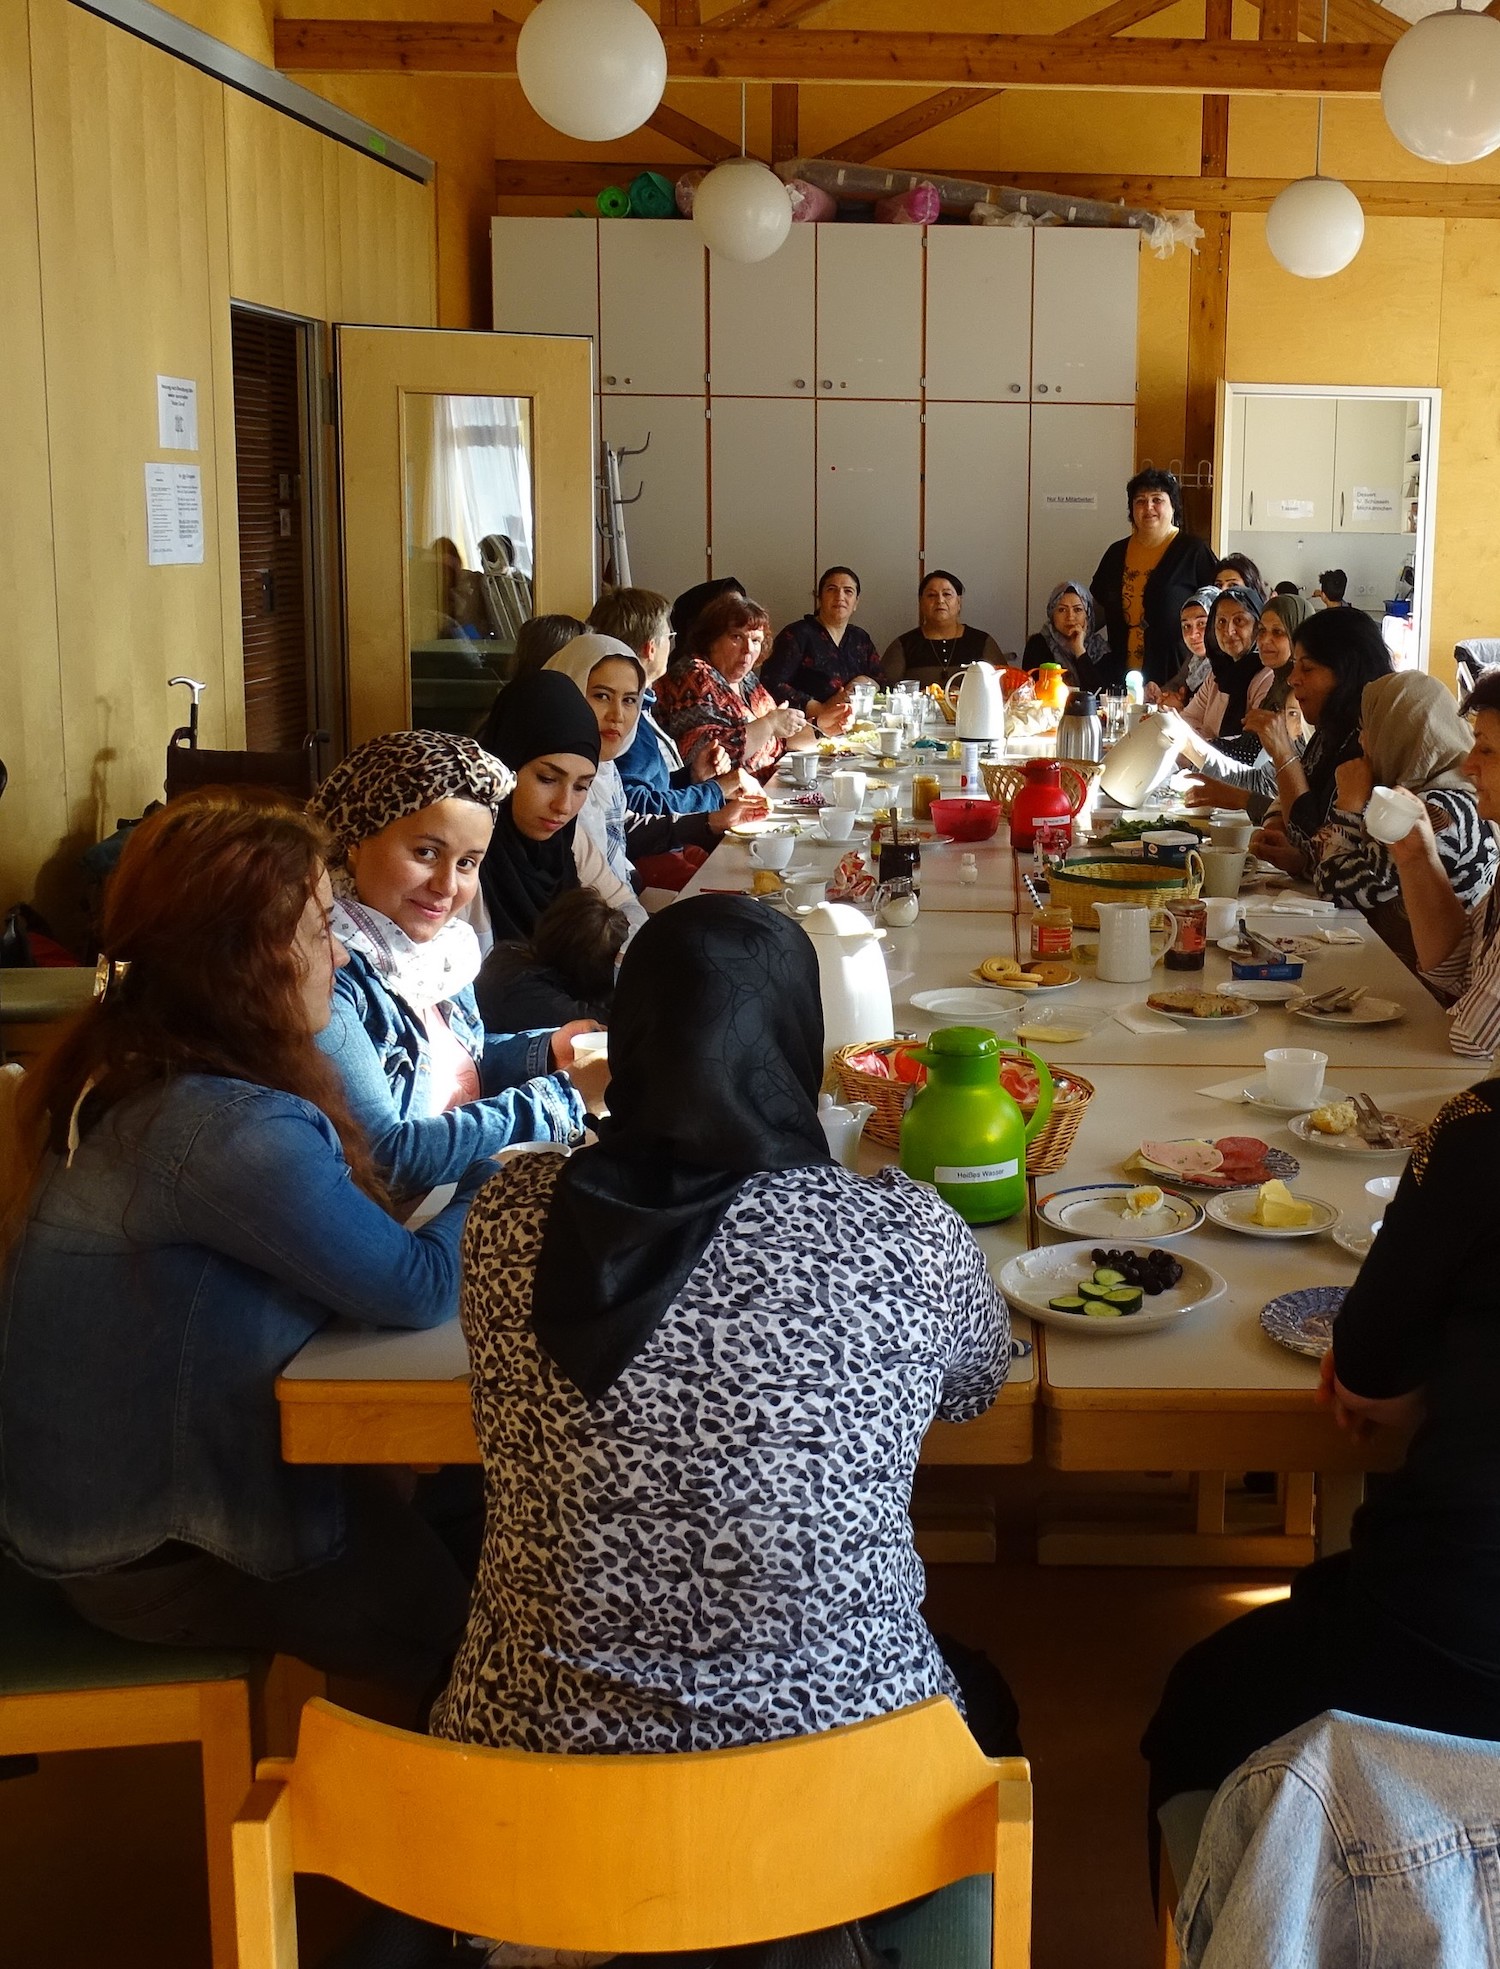 21 Frauen sitzen an einem großen Tisch und frühstücken